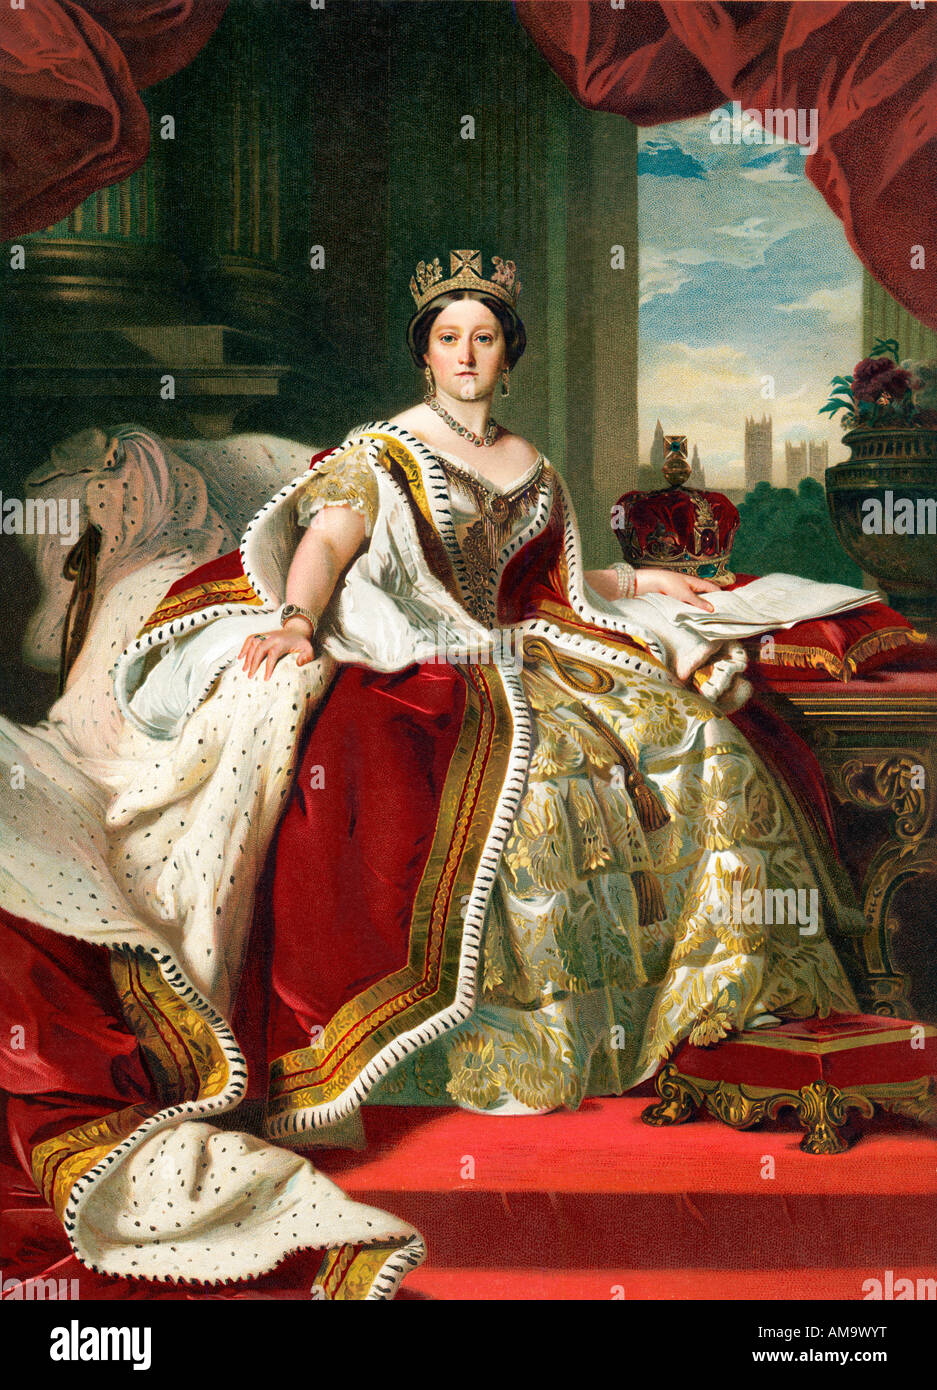 konigin-victoria-winterhalter-1859-portrat-ihrer-majestat-in-die-kronung-gewander-gekleidet-am9wyt.jpg